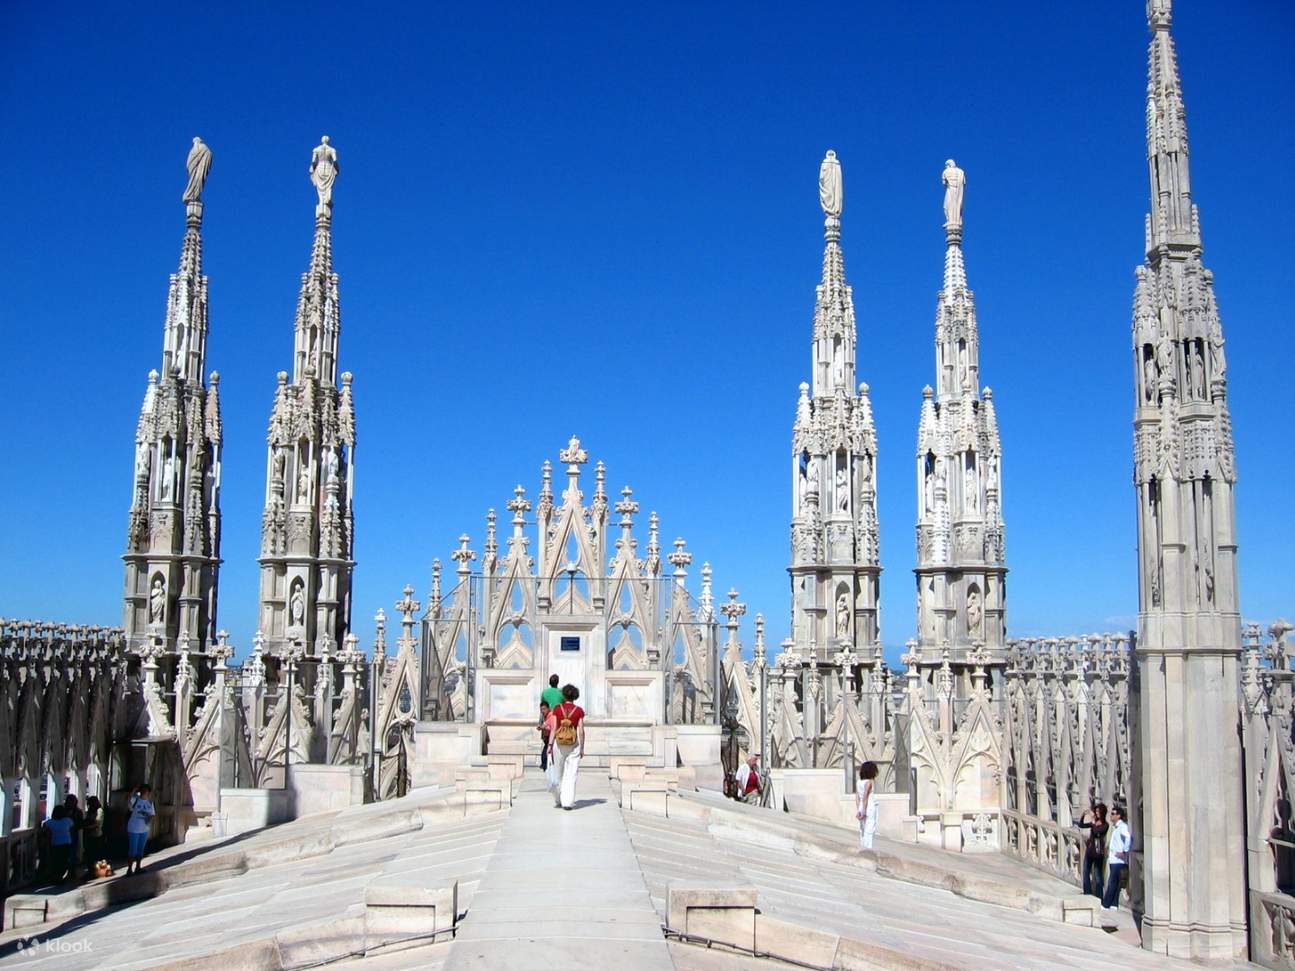 milan cathedral tour time